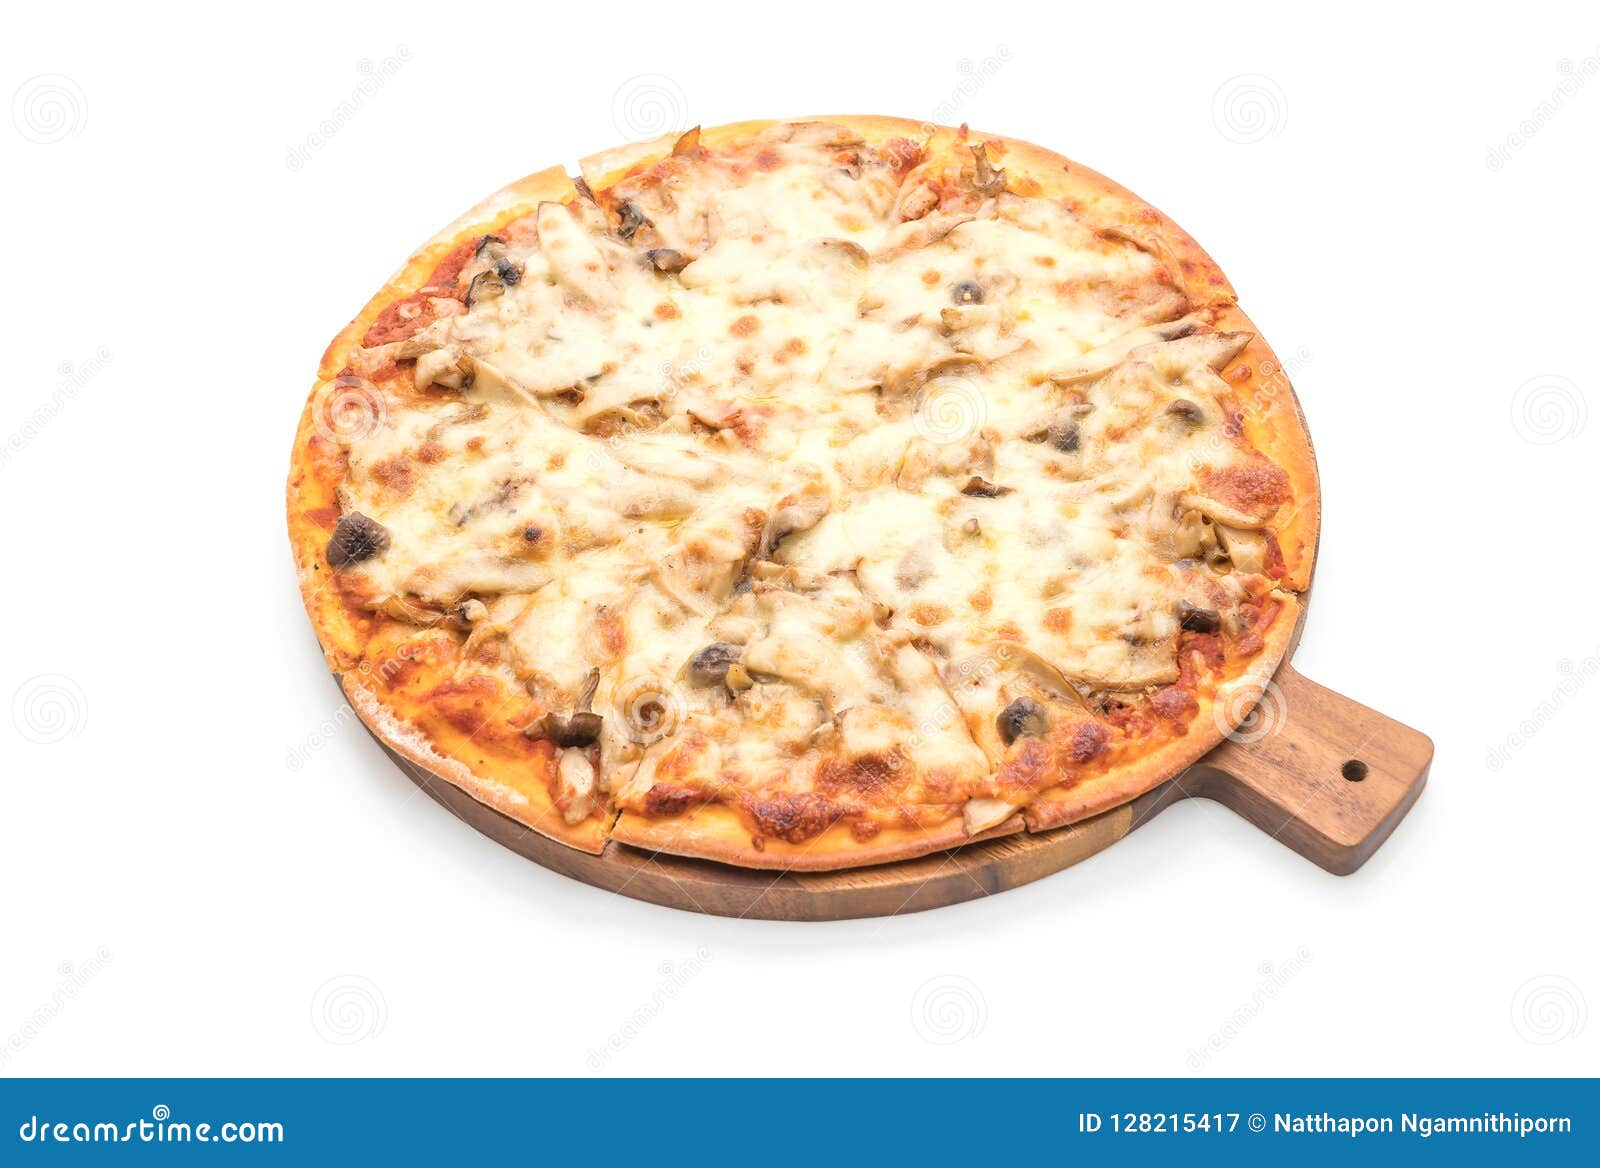 пицца грибная с белым соусом фото 15